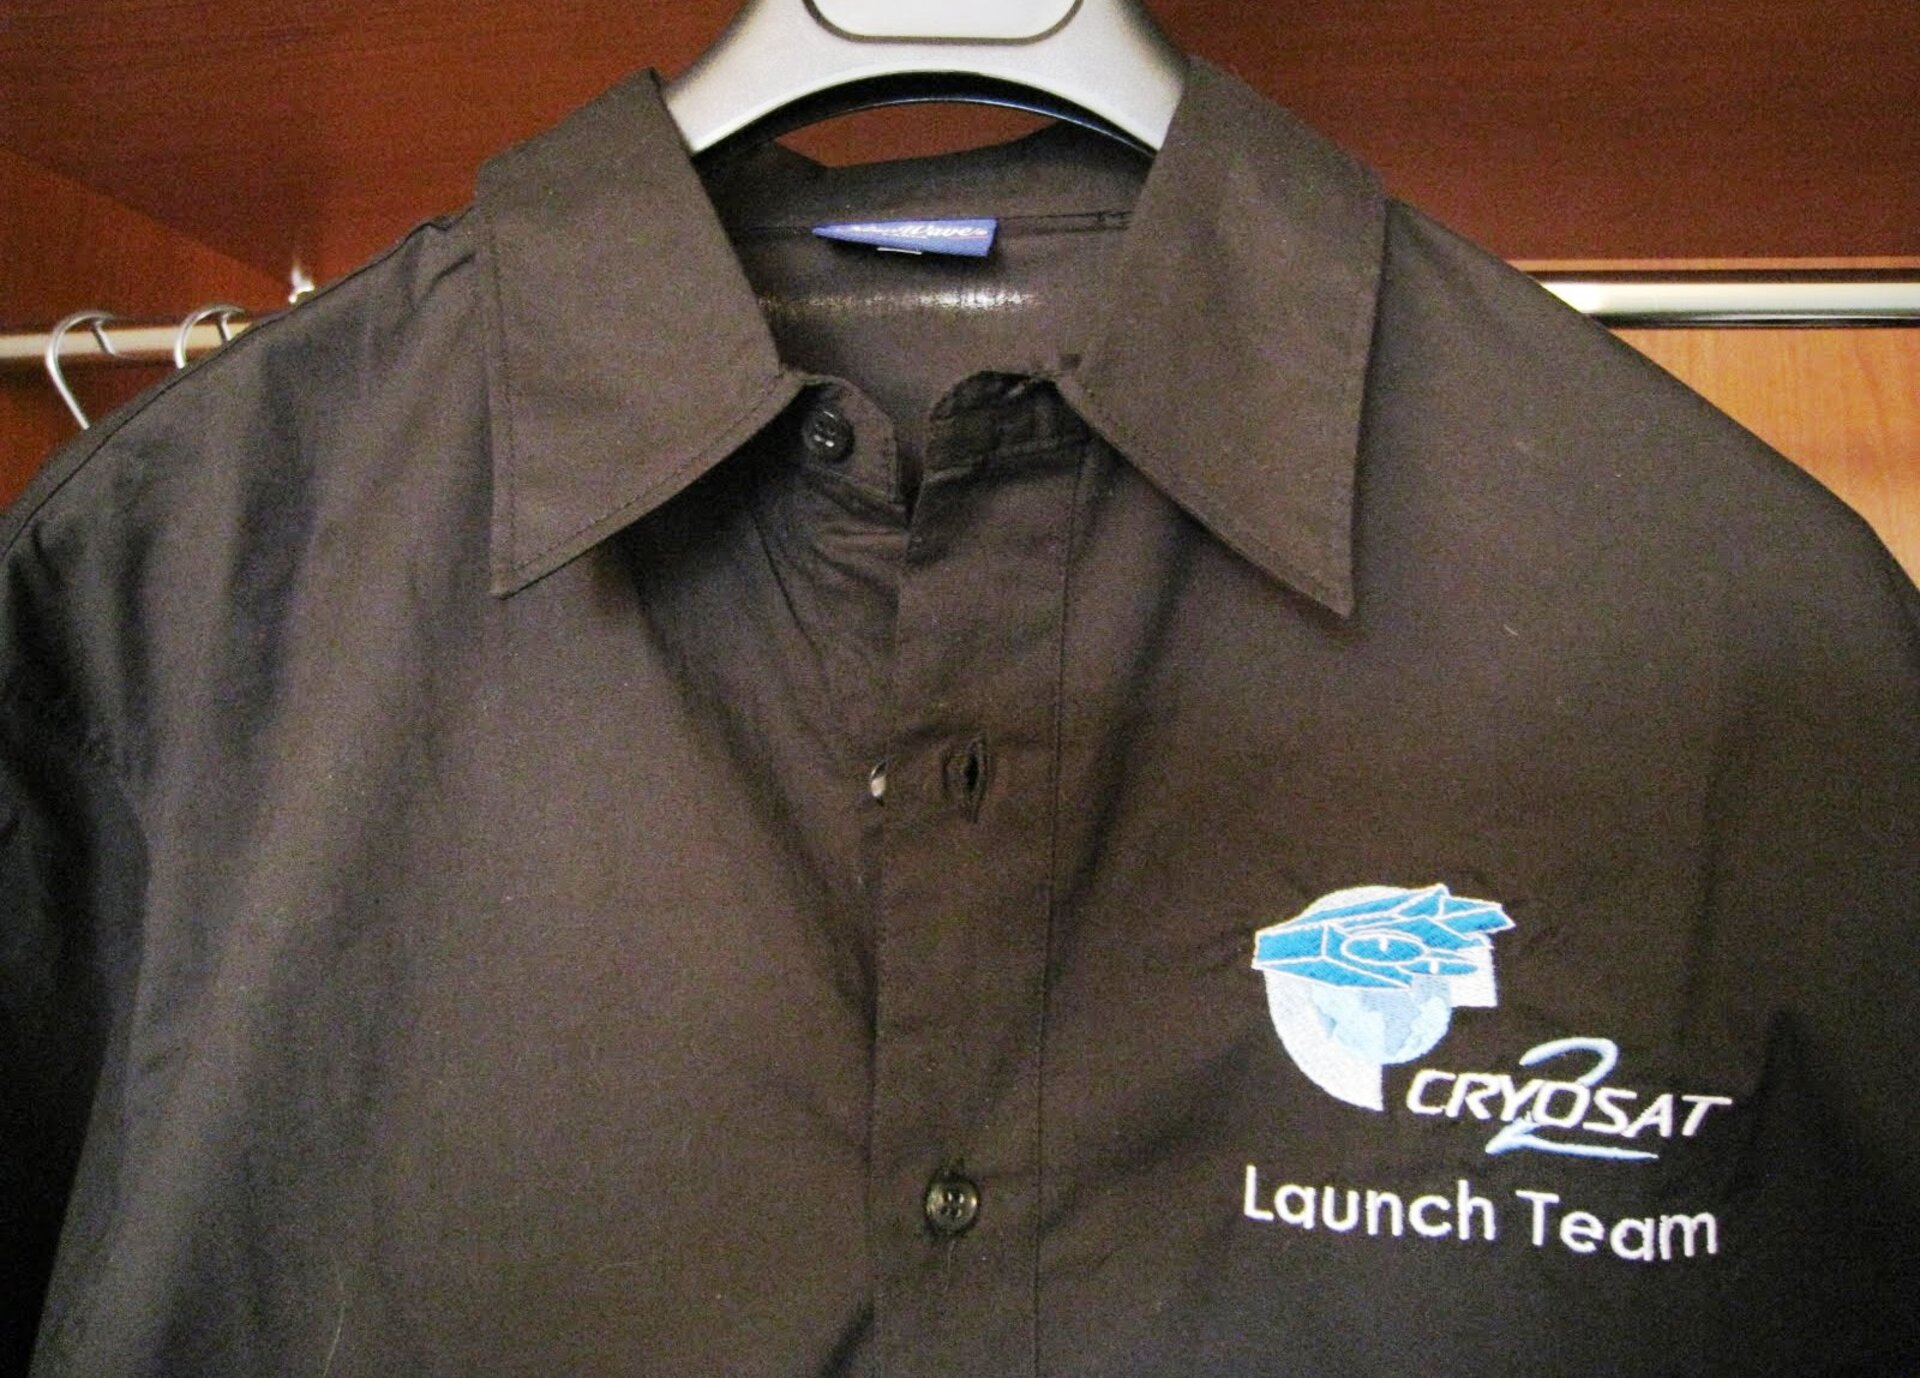 Launch team shirt